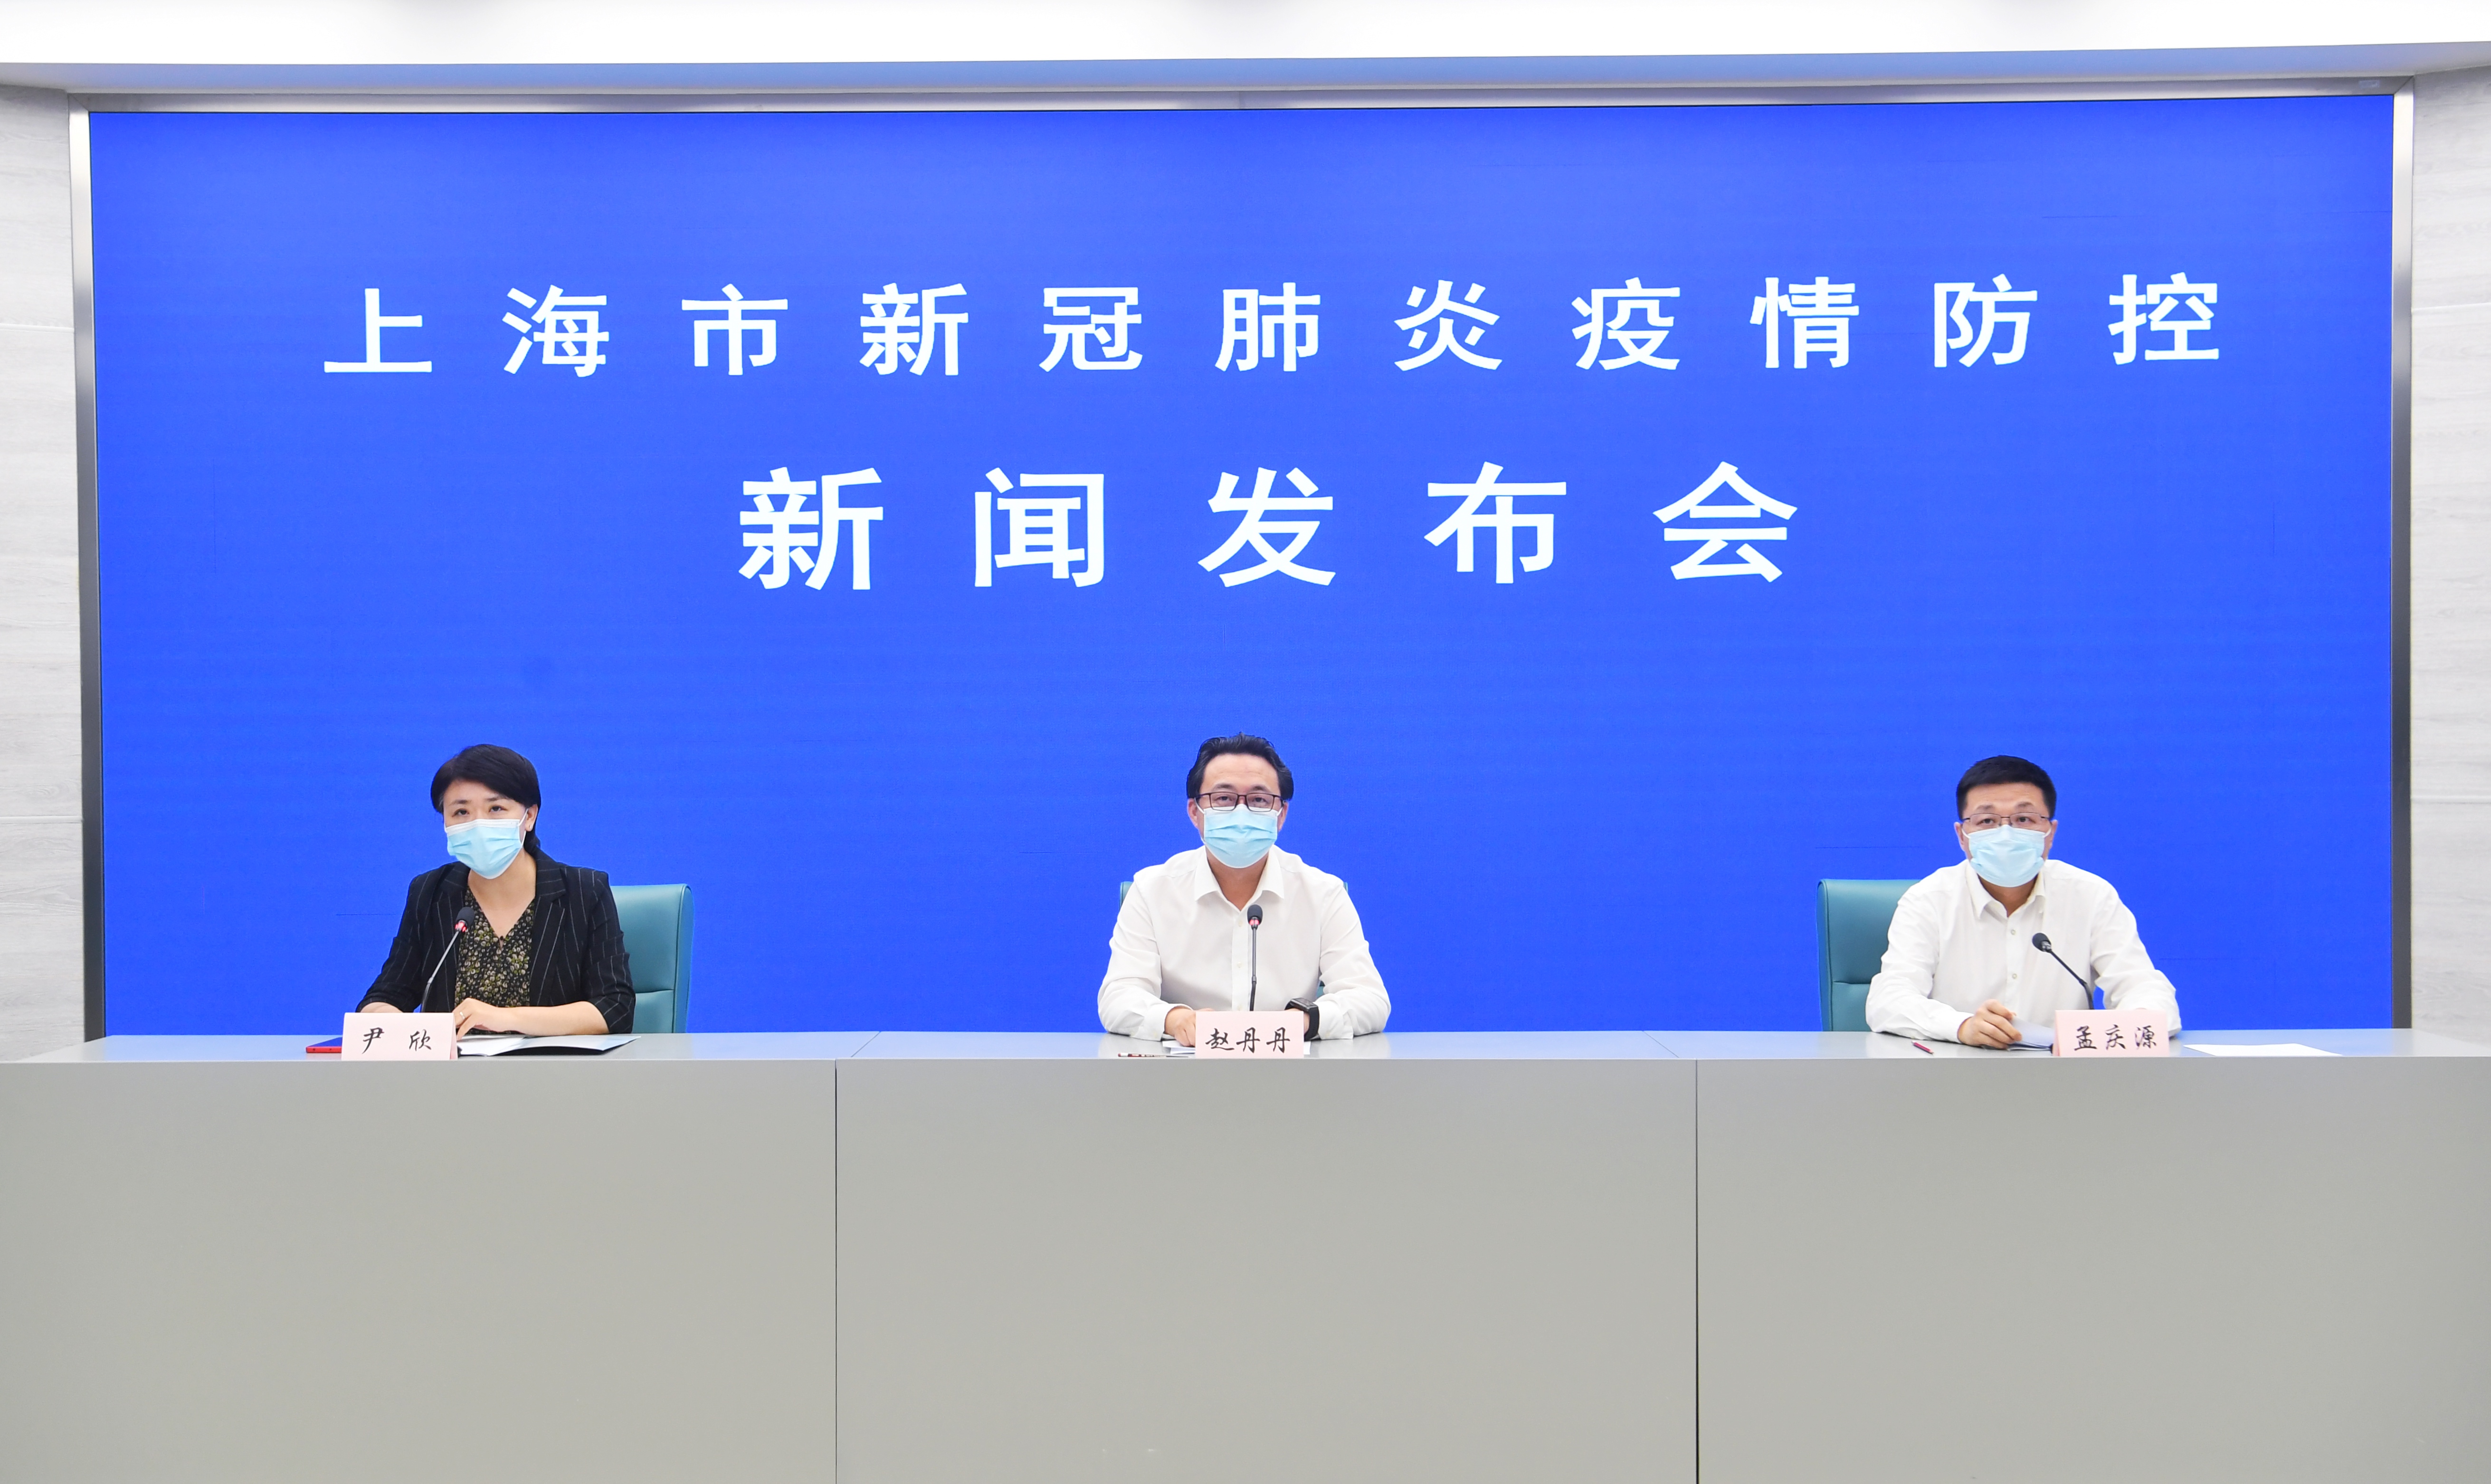 7月26日上海通报新冠肺炎防控情况